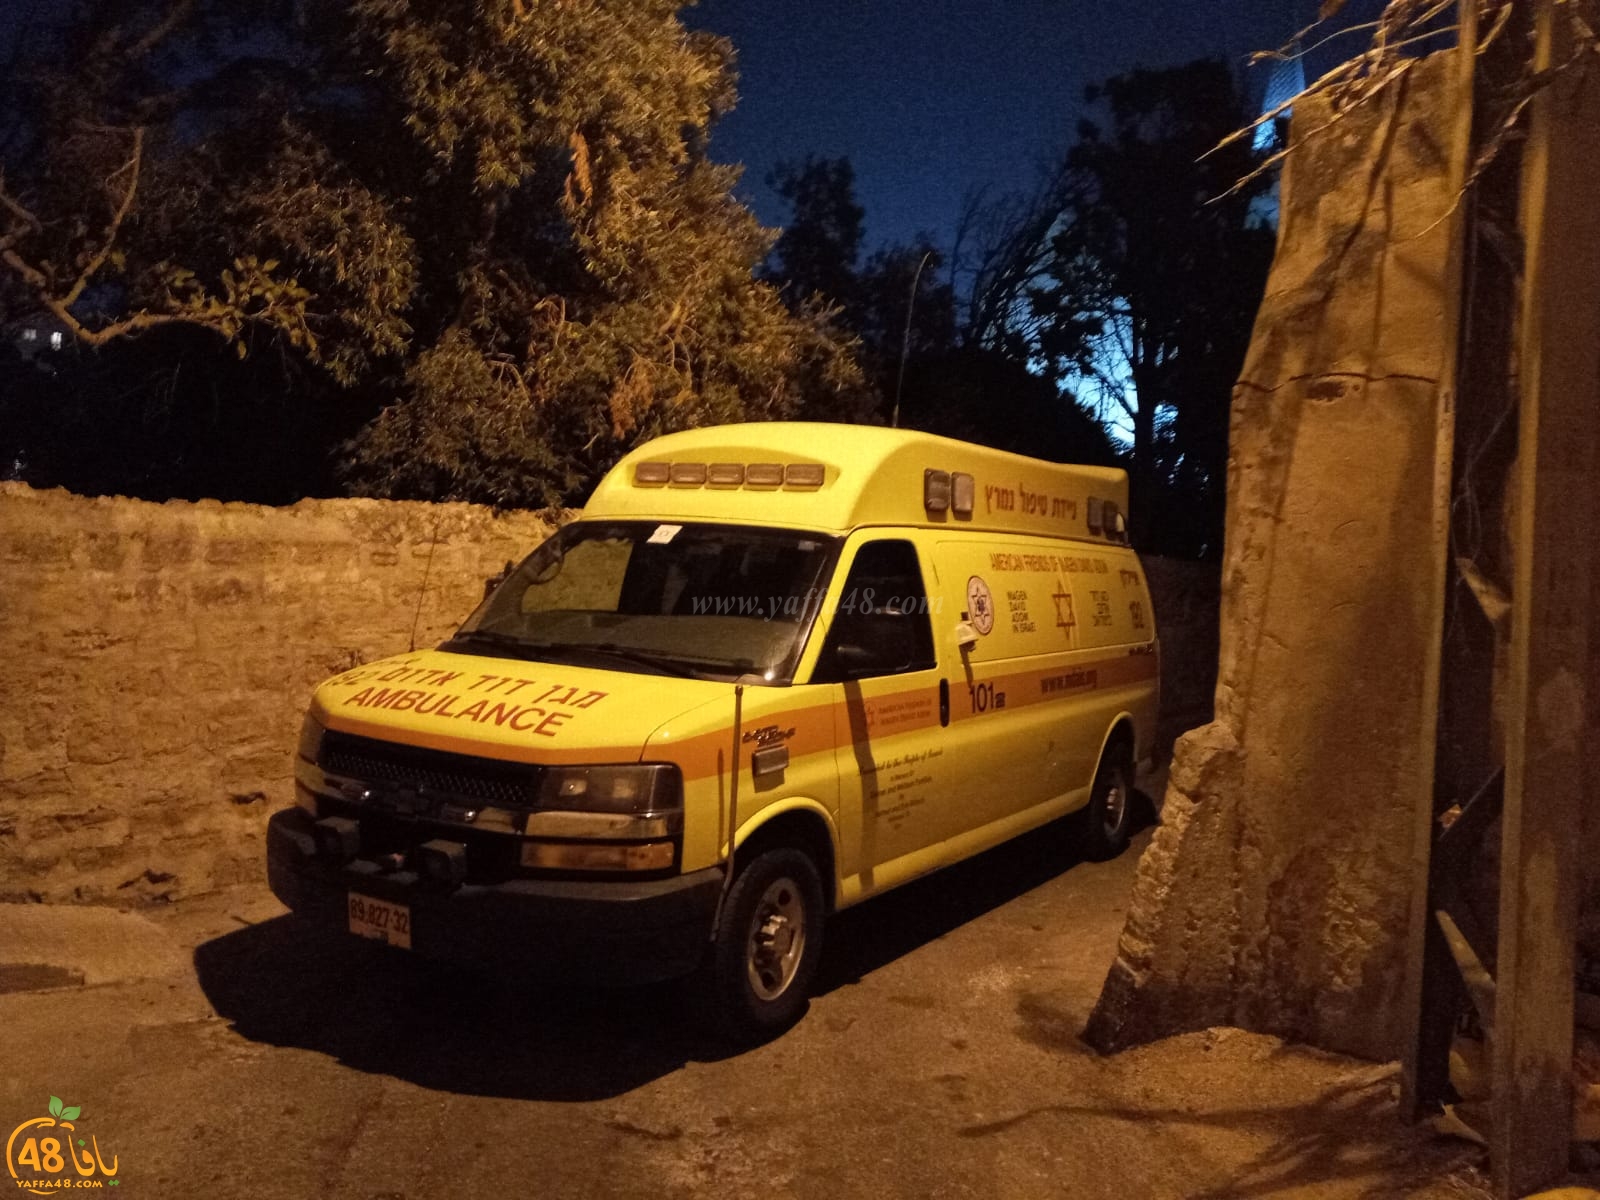  يافا: إصابة متوسطة لرجل سقط من علو في حي العجمي 